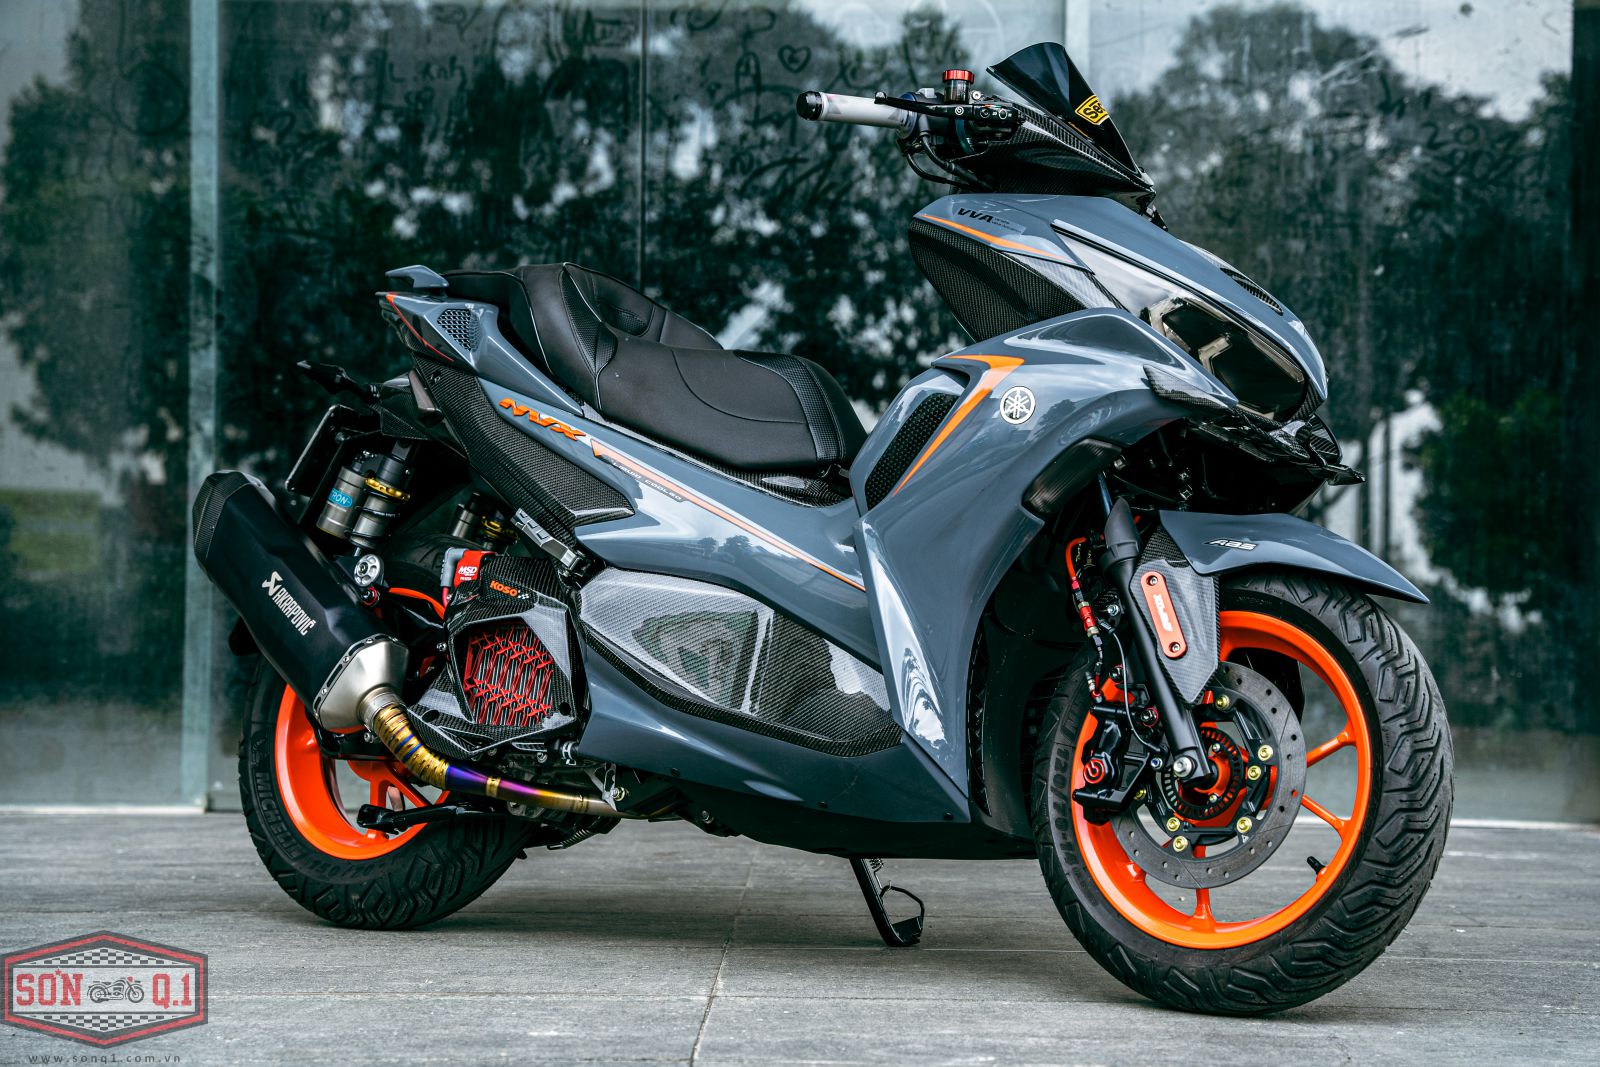 Ngắm Yamaha NVX 155 độ cá tính với dàn tem vàng cùng loạt đồ chơi của biker  Việt  MuasamXecom